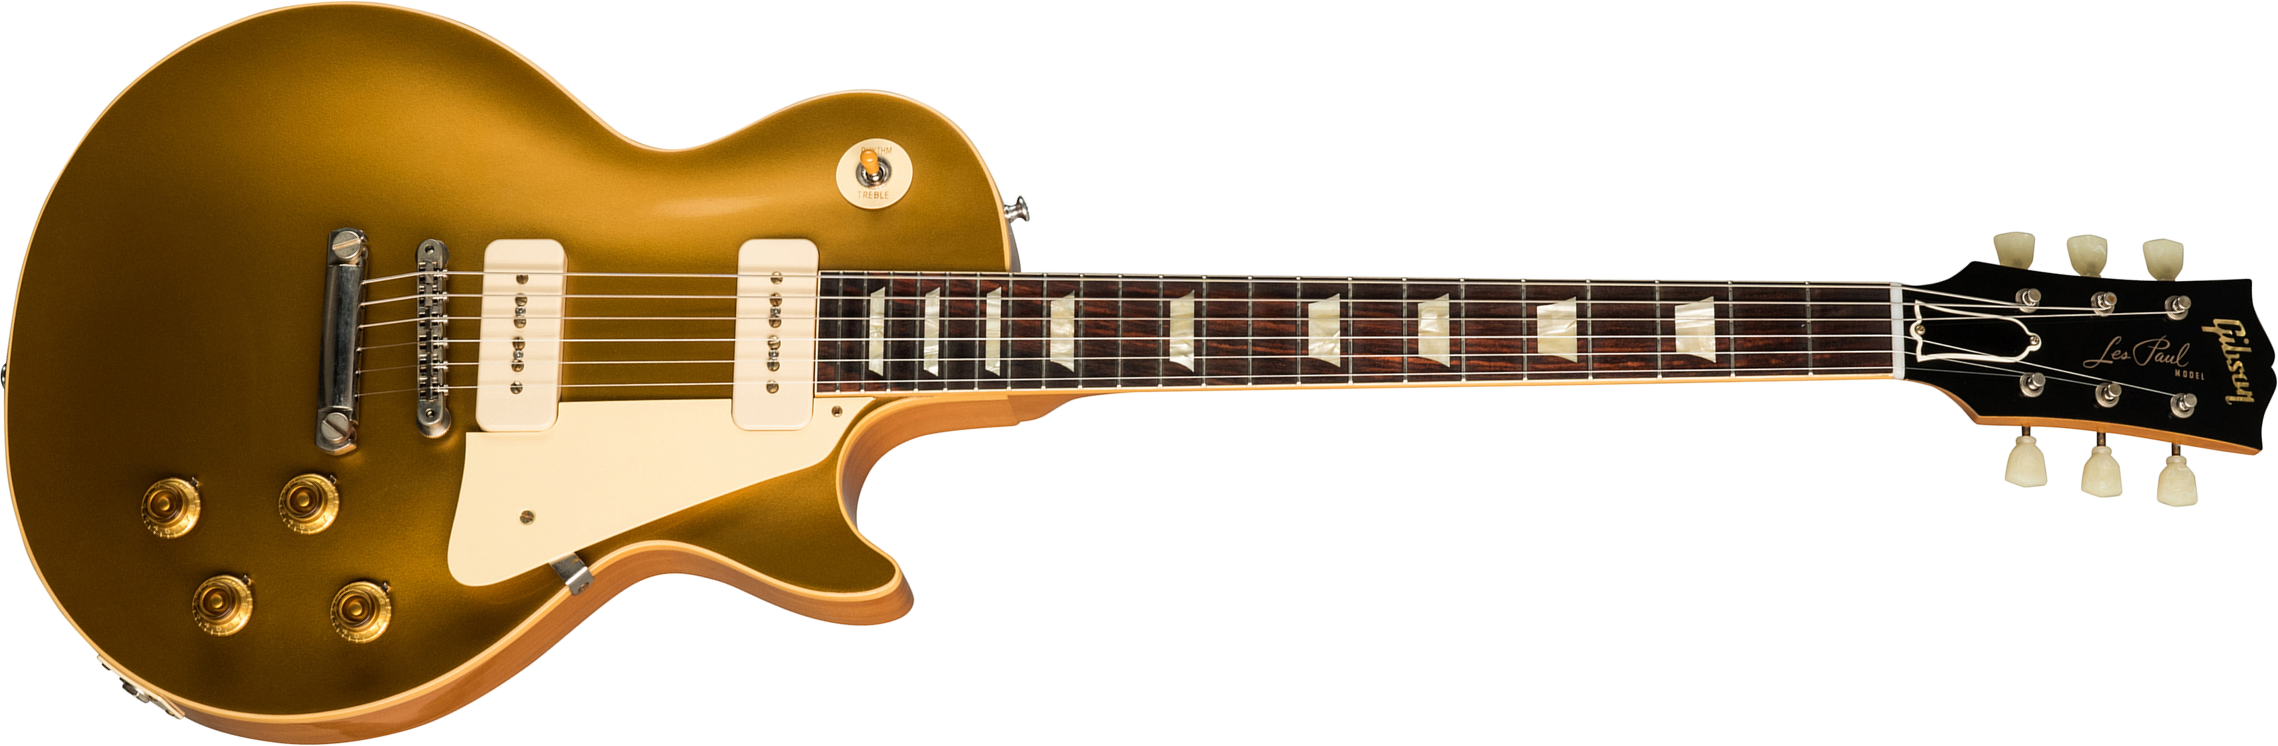 Gibson Custom Shop Les Paul Goldtop 1956 Reissue 2019 2p90 Ht Rw - Vos Double Gold - Enkel gesneden elektrische gitaar - Main picture